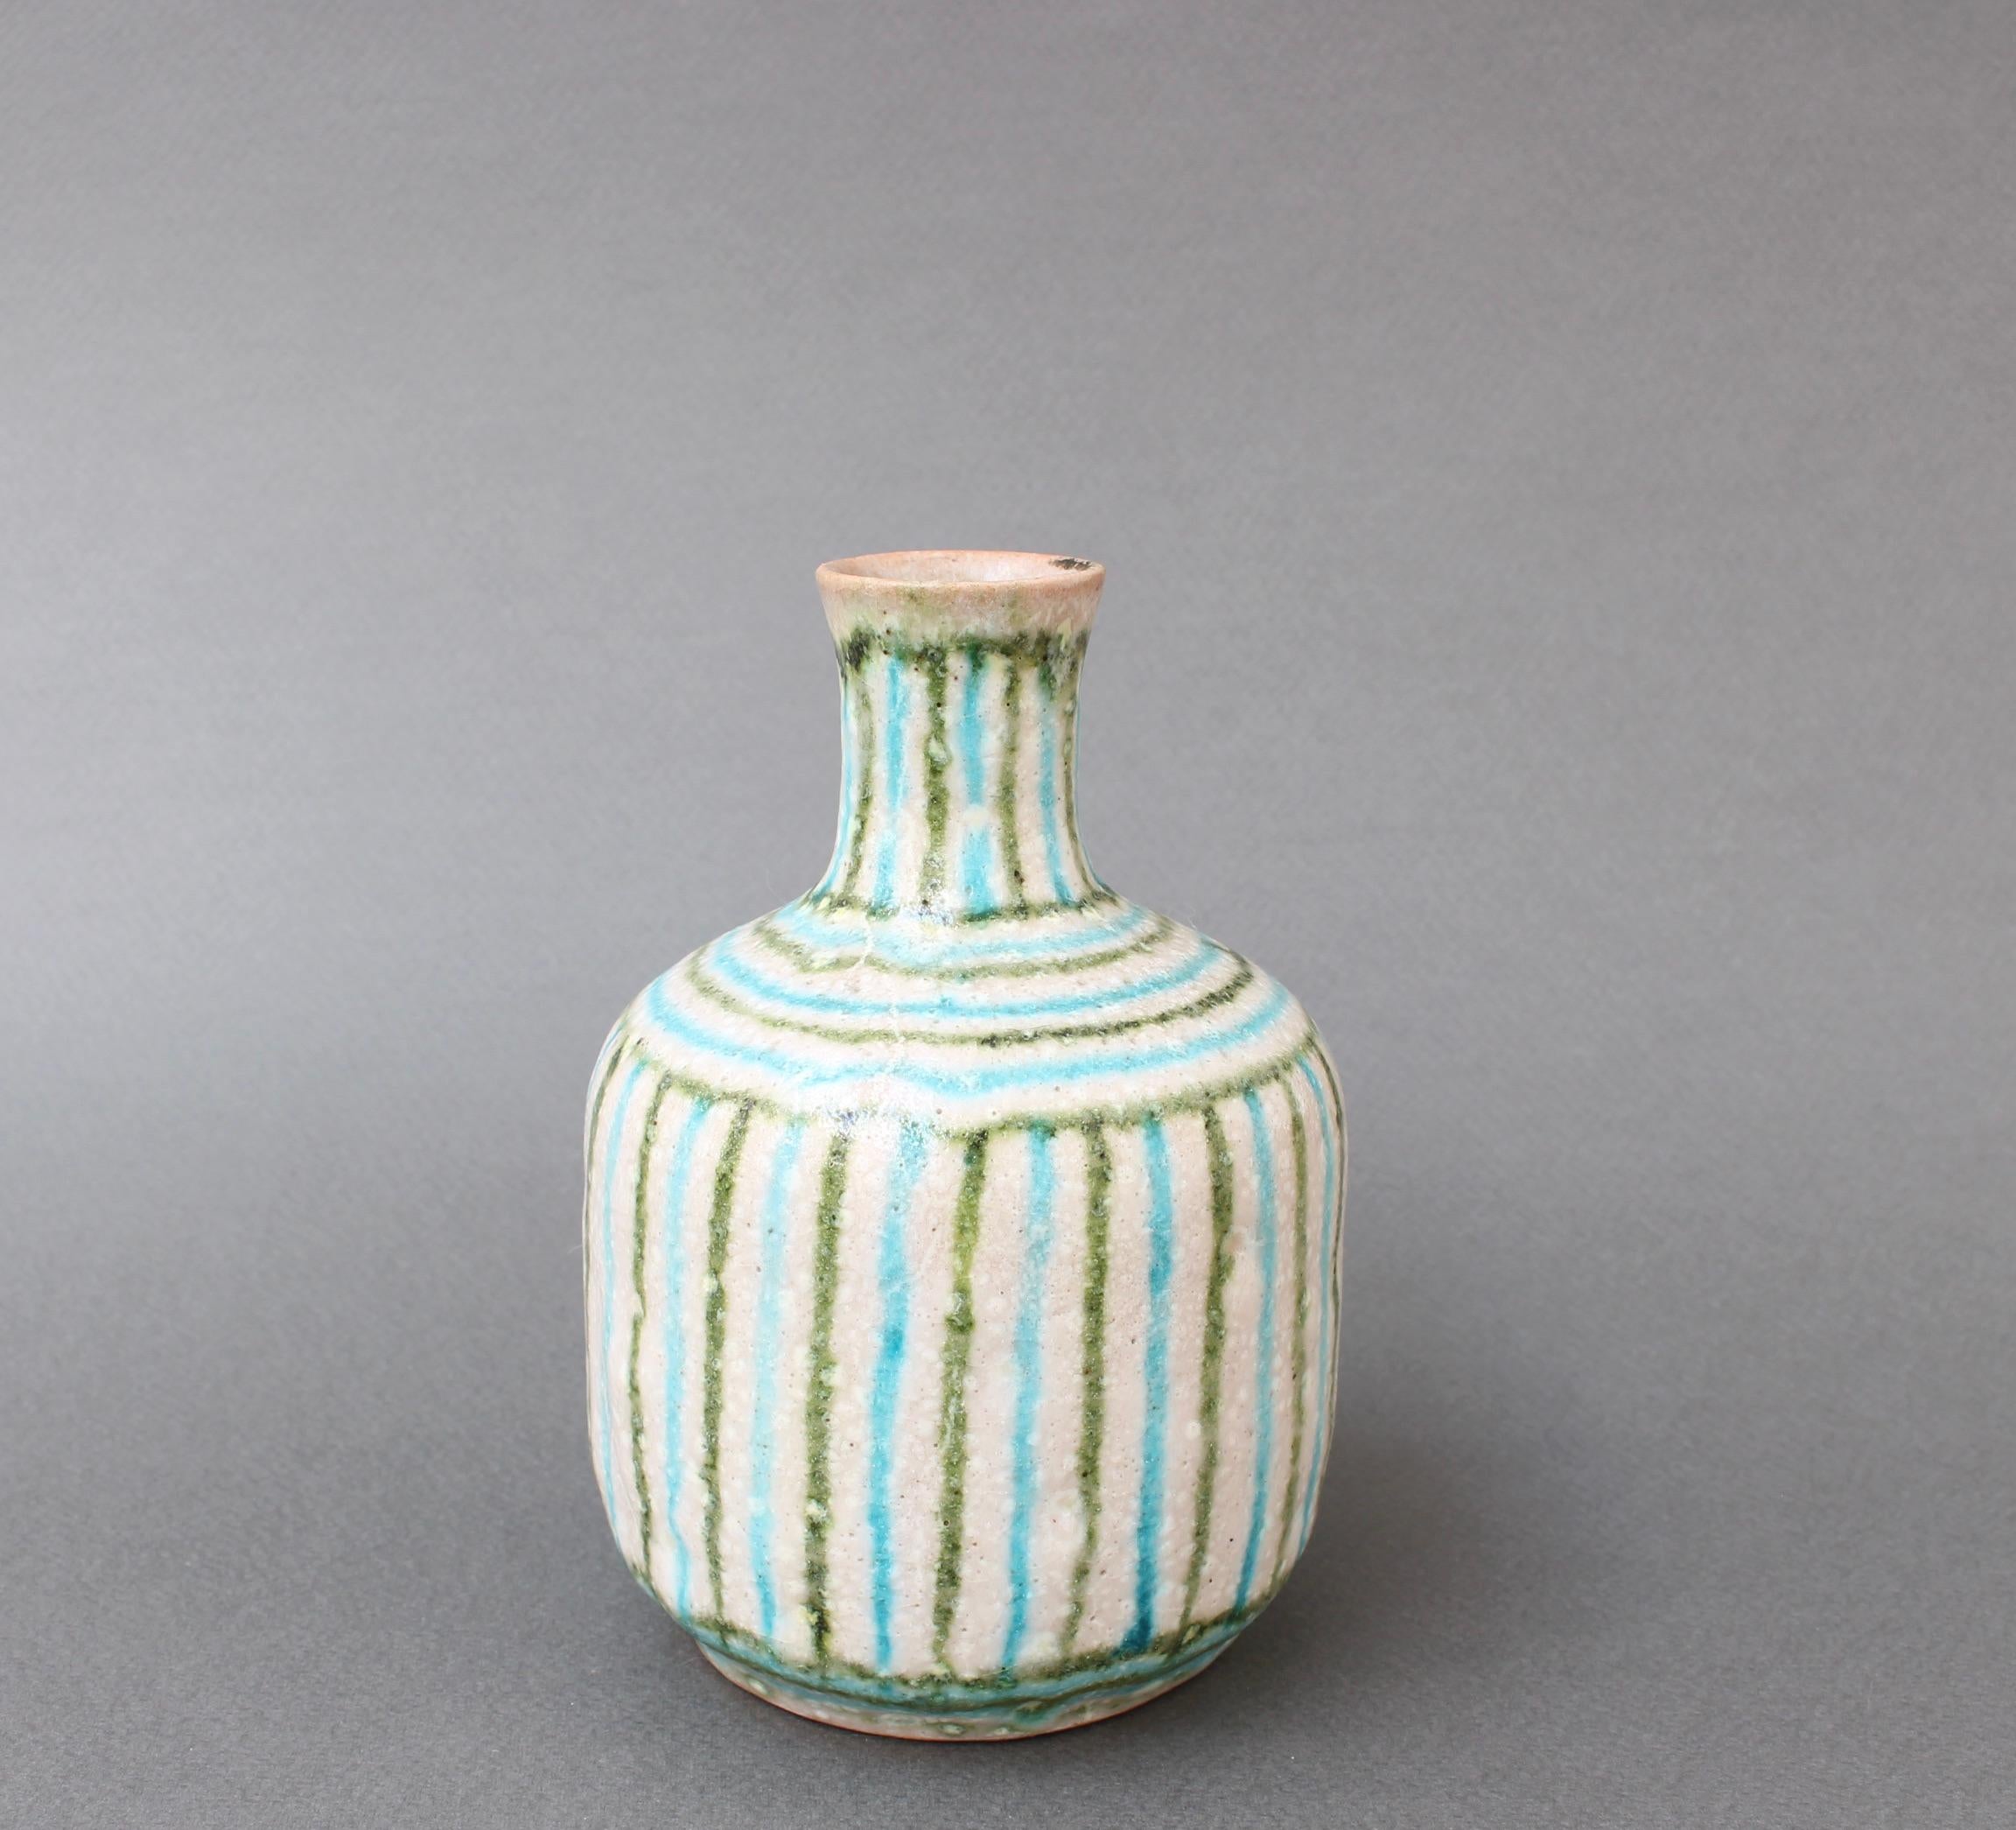 Hand-Painted Midcentury Italian Ceramic Vase by Guido Gambone, 'circa 1950s'